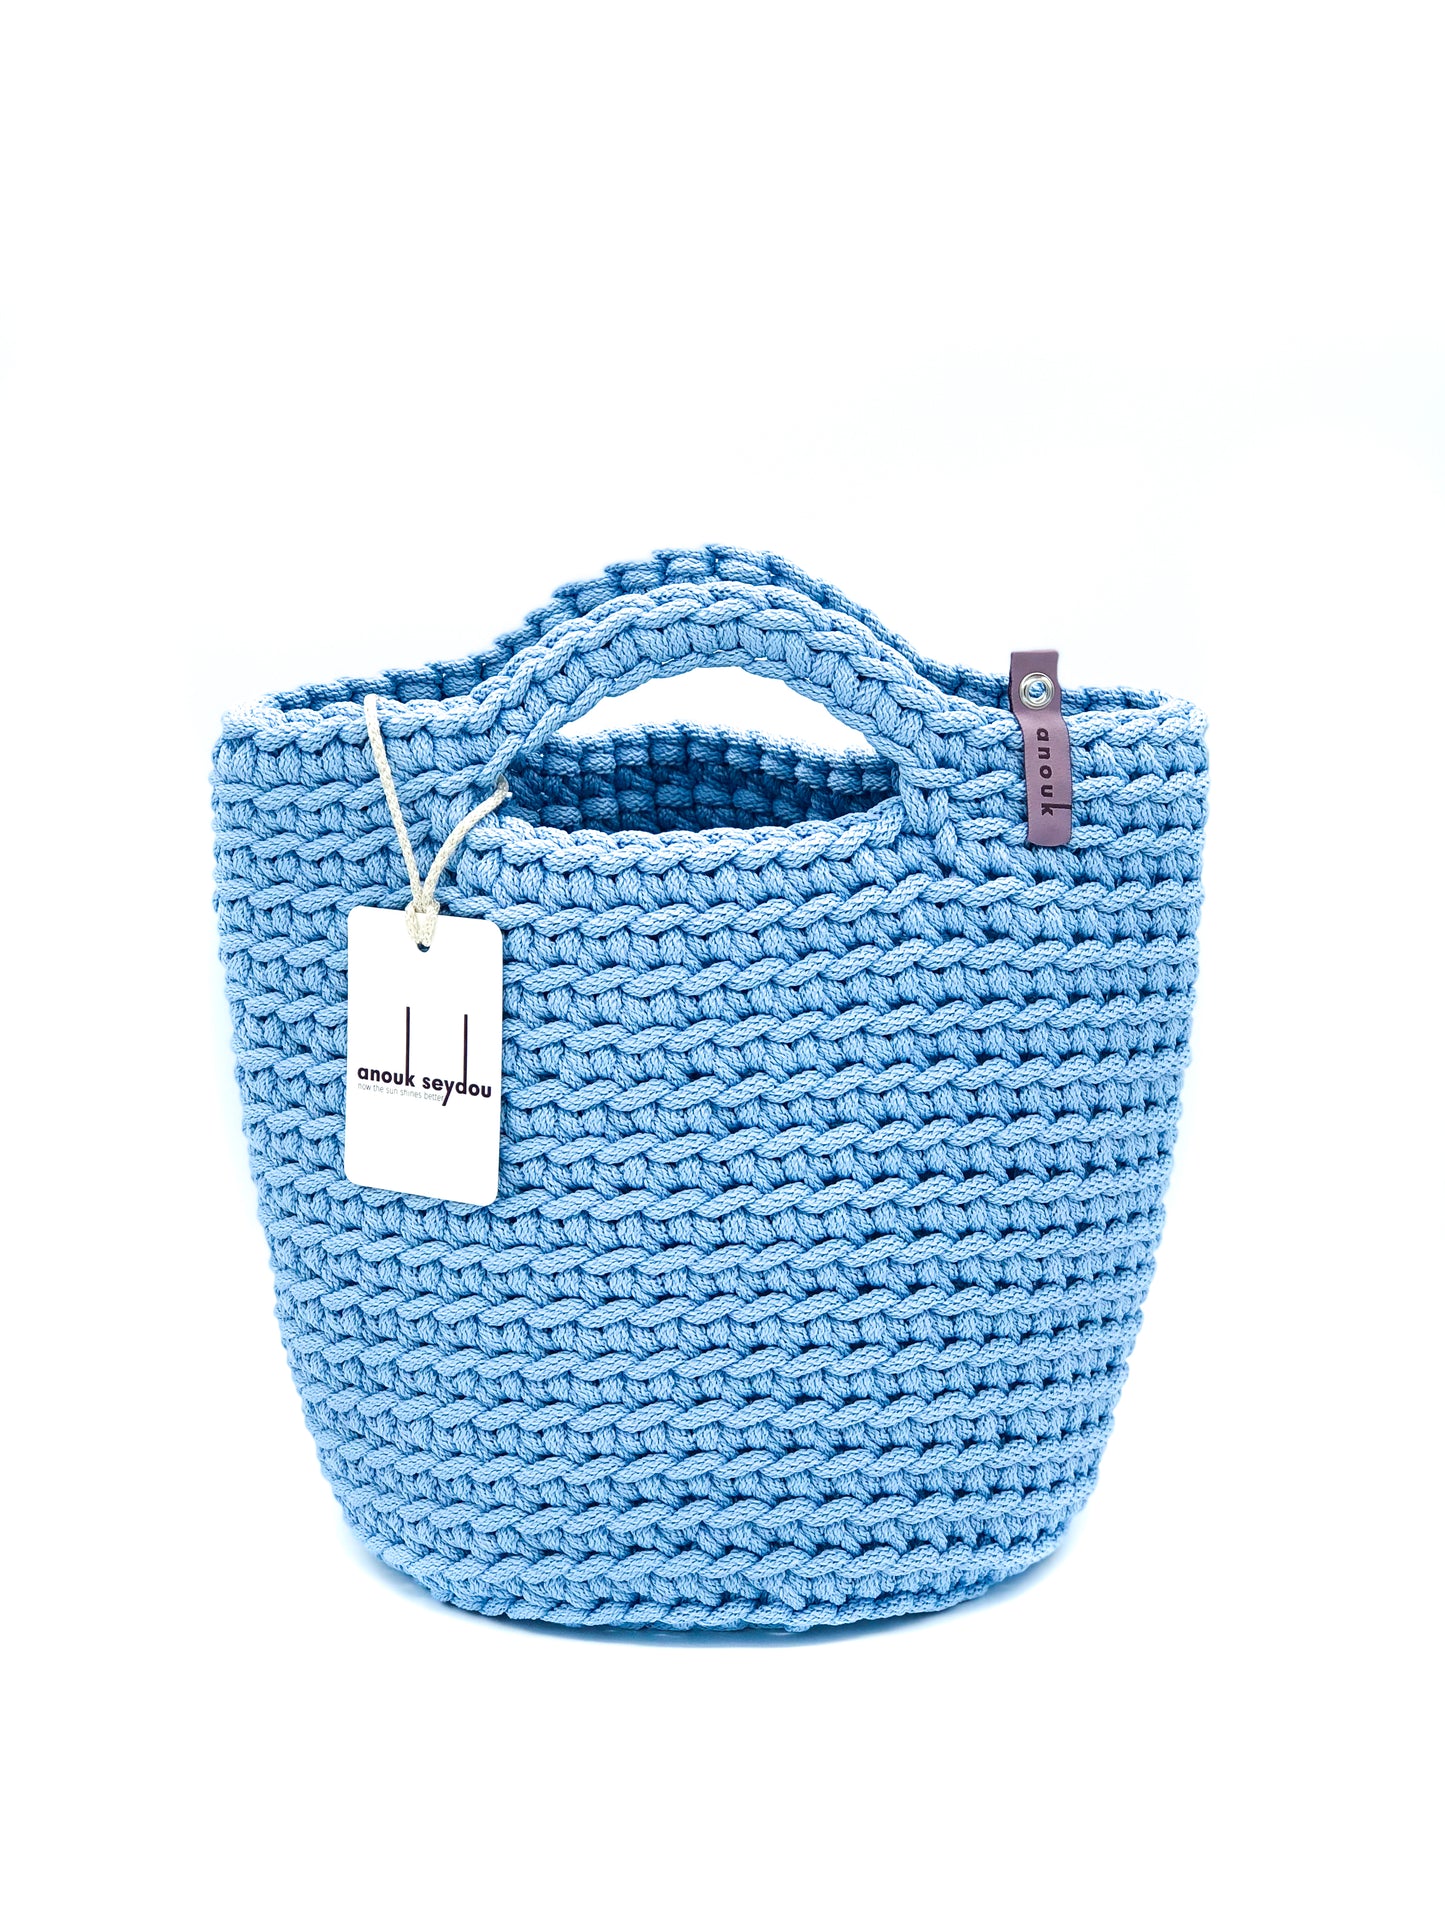 Scandinavian Style Handmade Crochet Bag with Short Handles Sky Blue